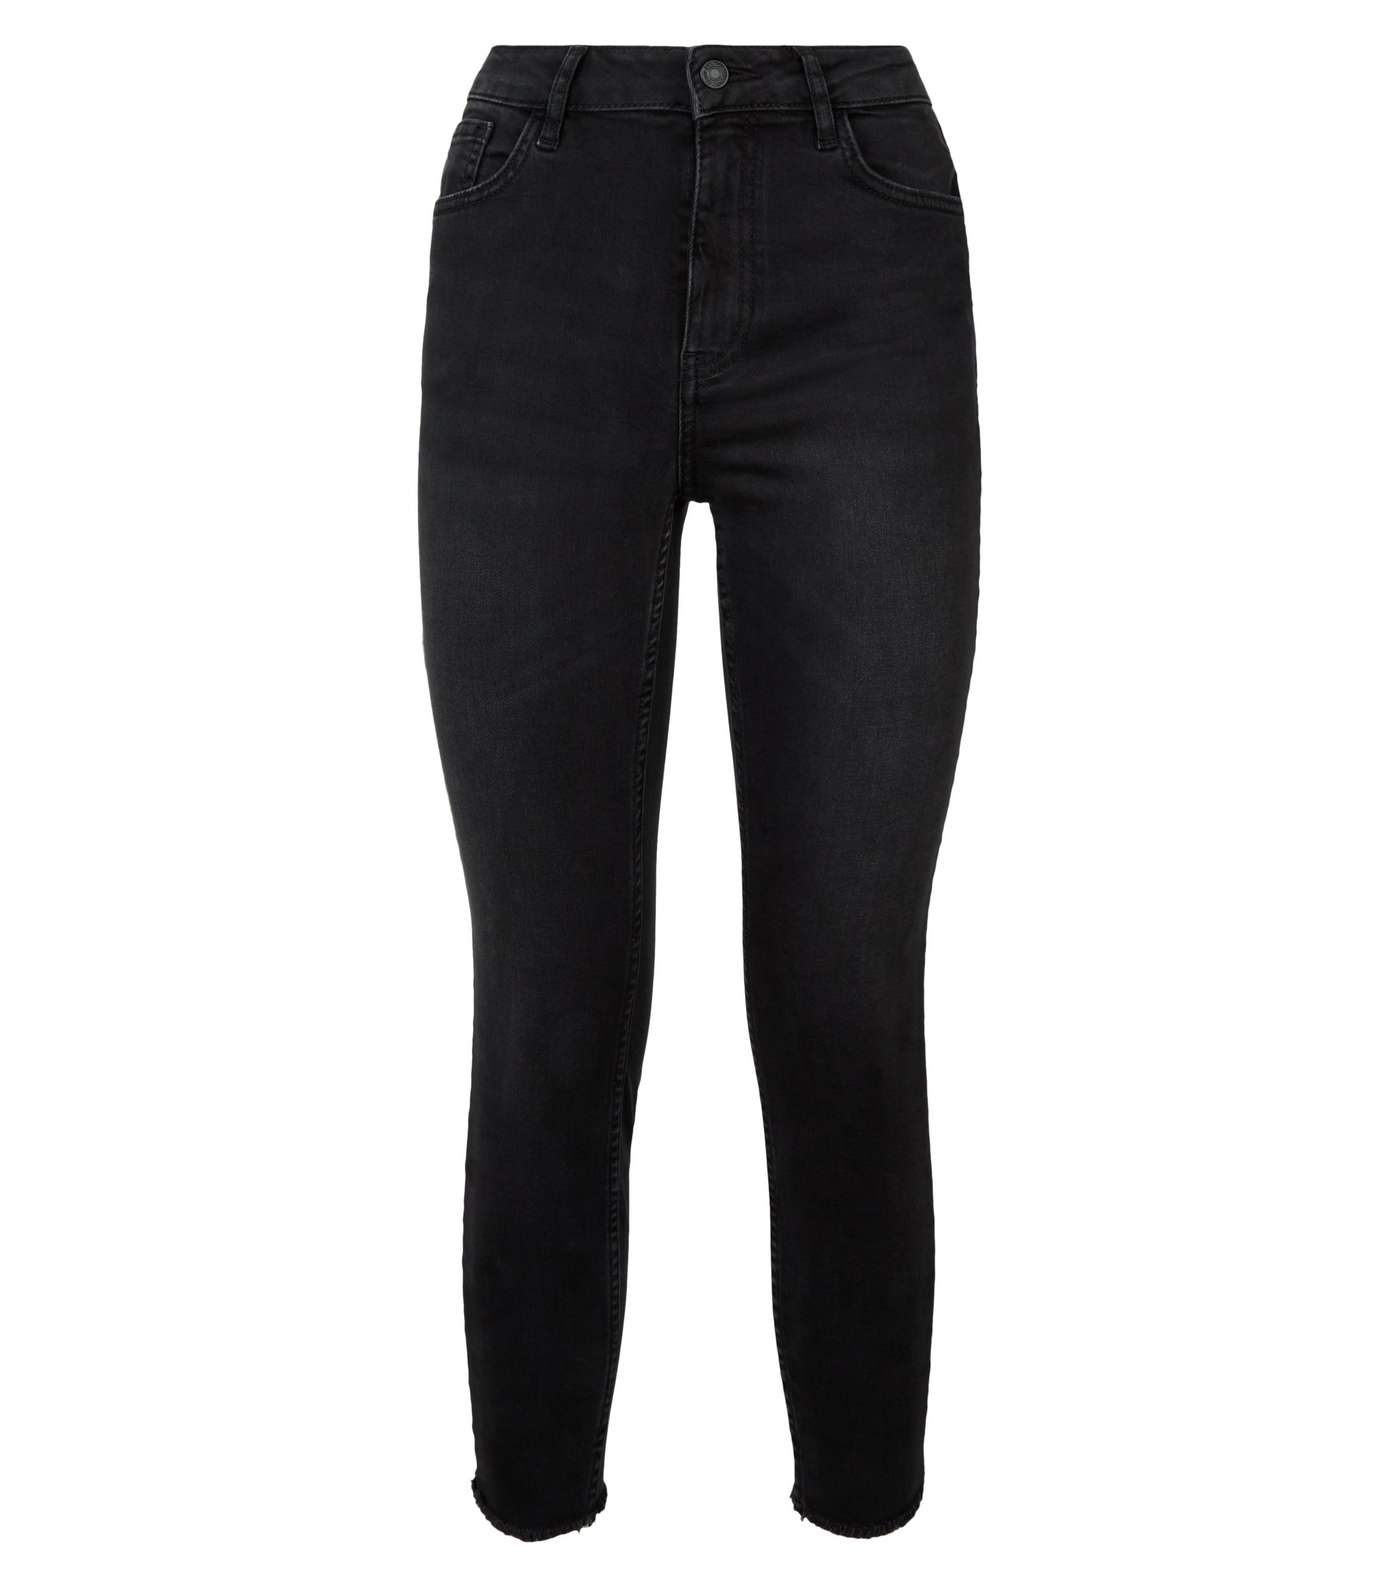 Petite Black 'Lift & Shape' Skinny Jeans Image 4